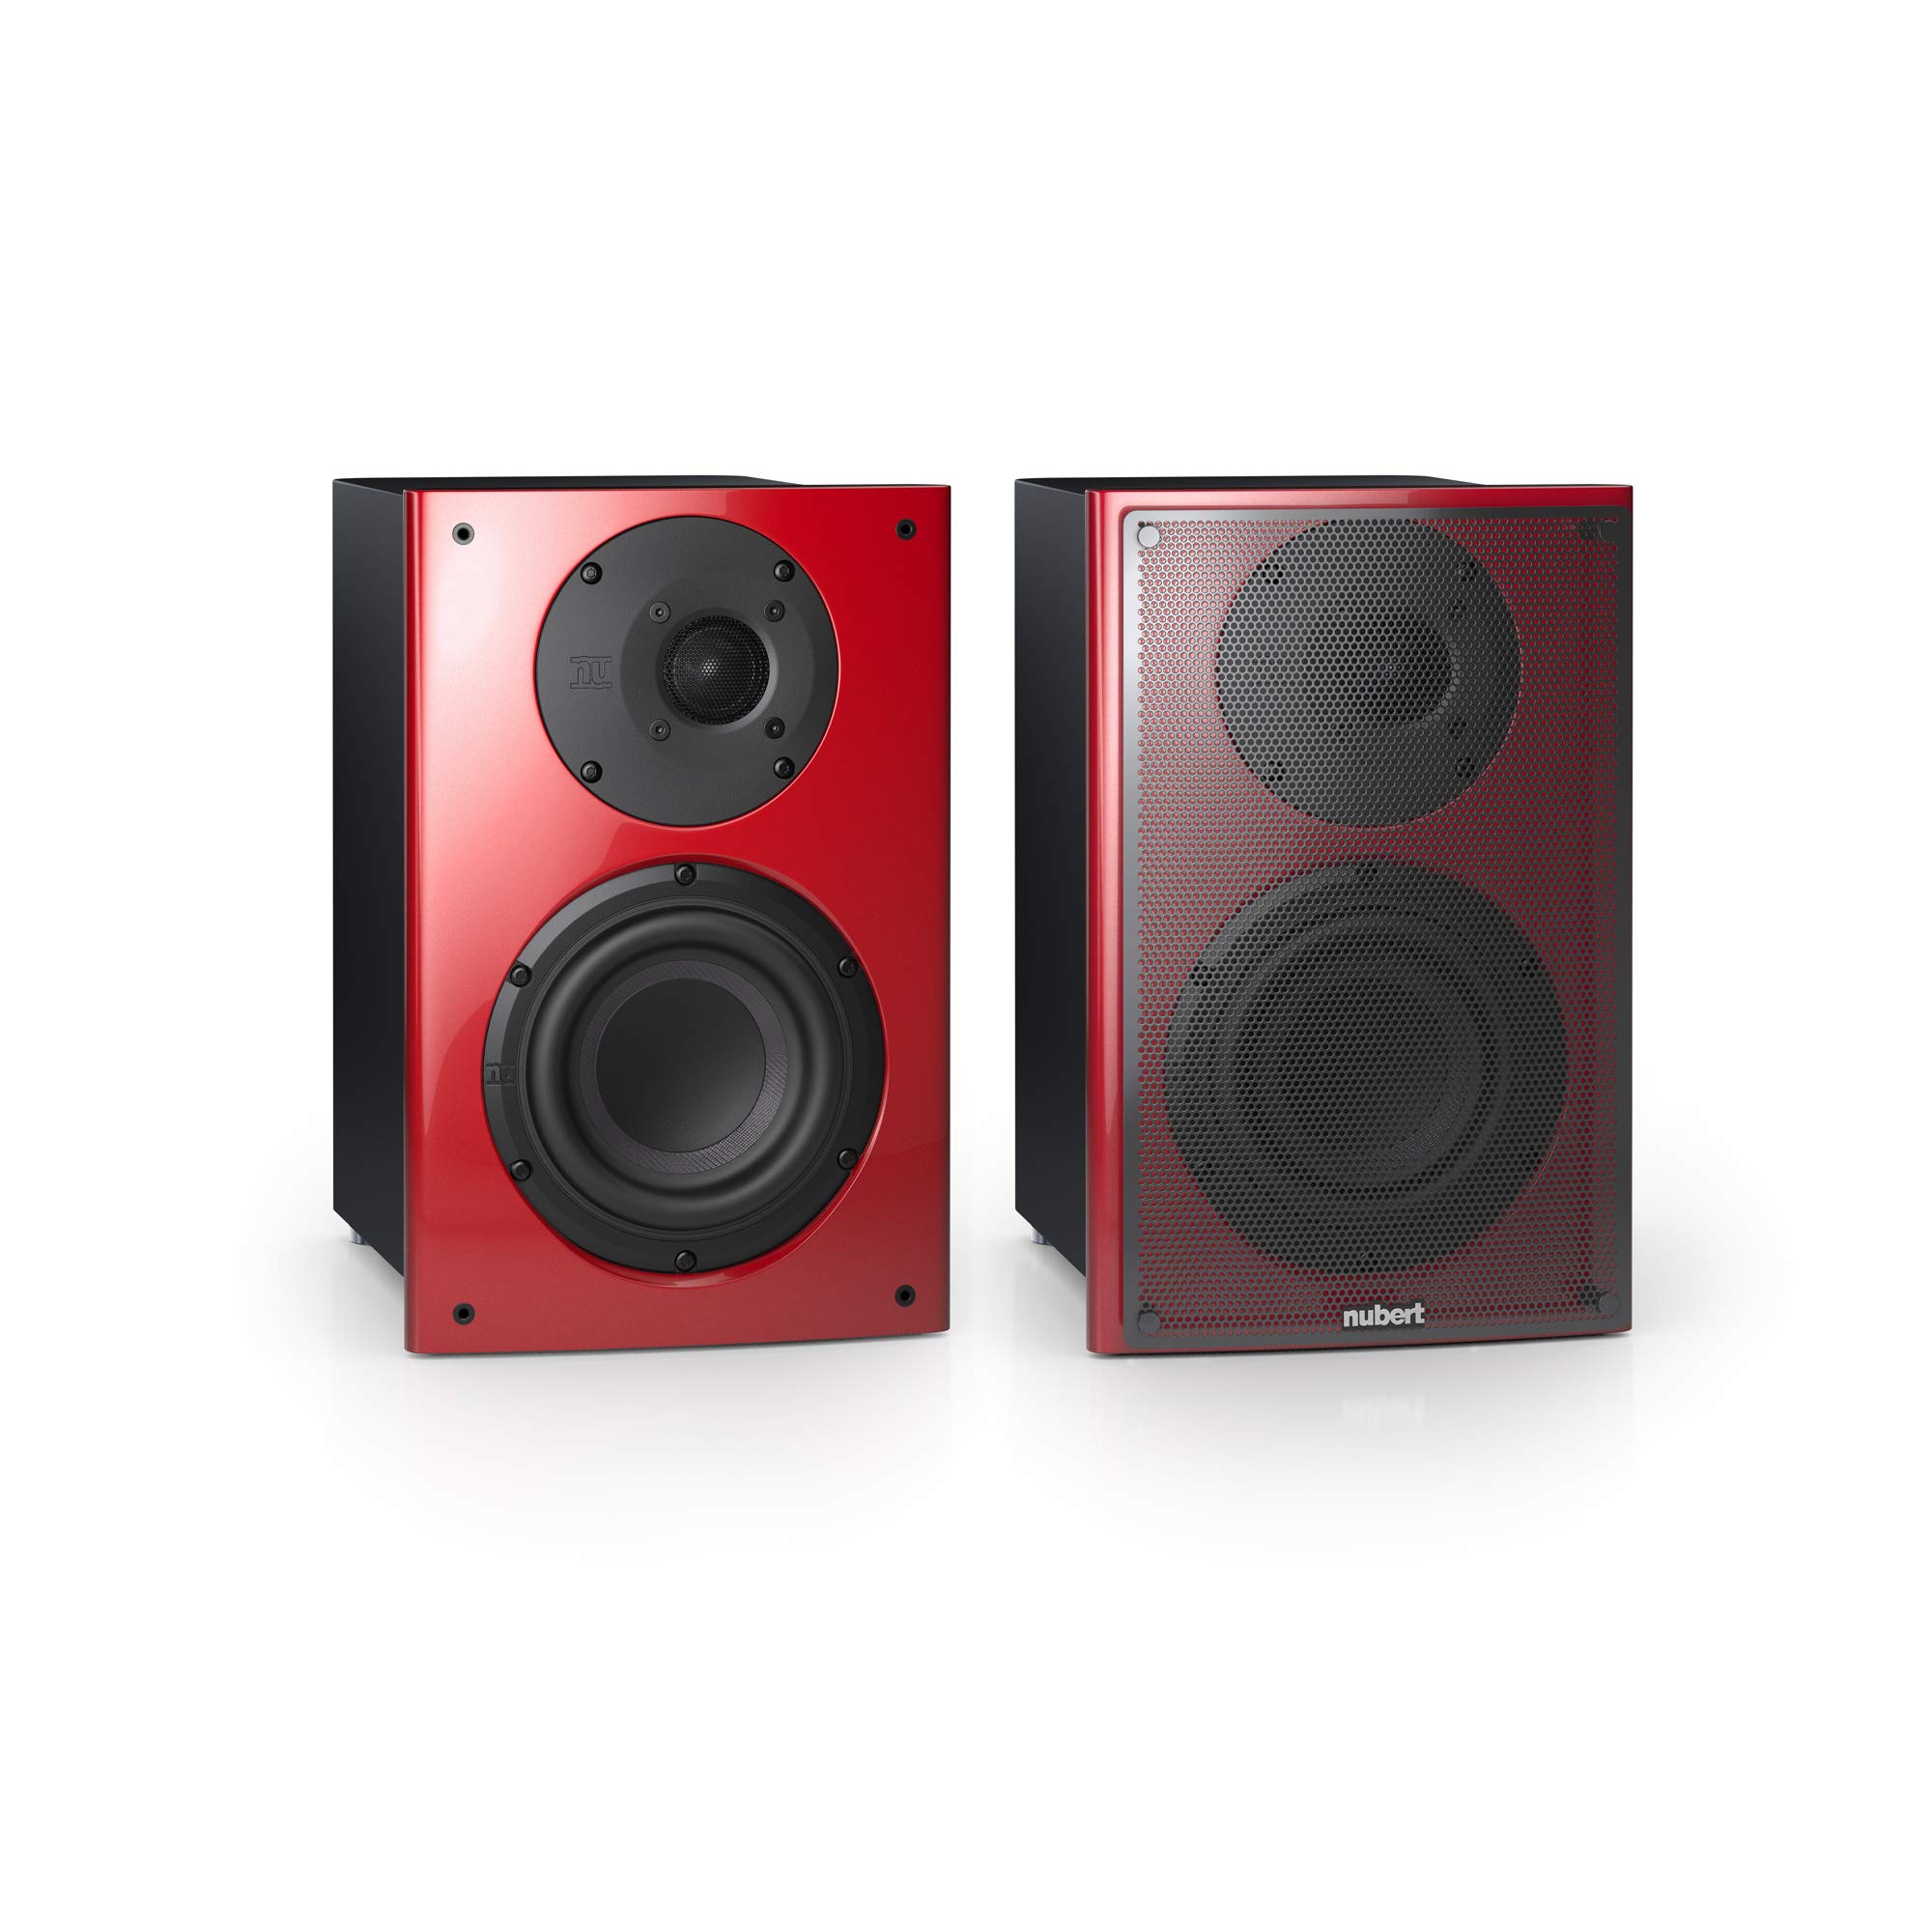 Nubert nuVero 30 | Rot/Schwarzes Dipollautsprecherpaar | 2 Stück Kompaktlautsprecher | Lautsprecher für Heimkino & HiFi | Musikgenuss auf höchstem Niveau | Passive Surroundboxen Made in Germany